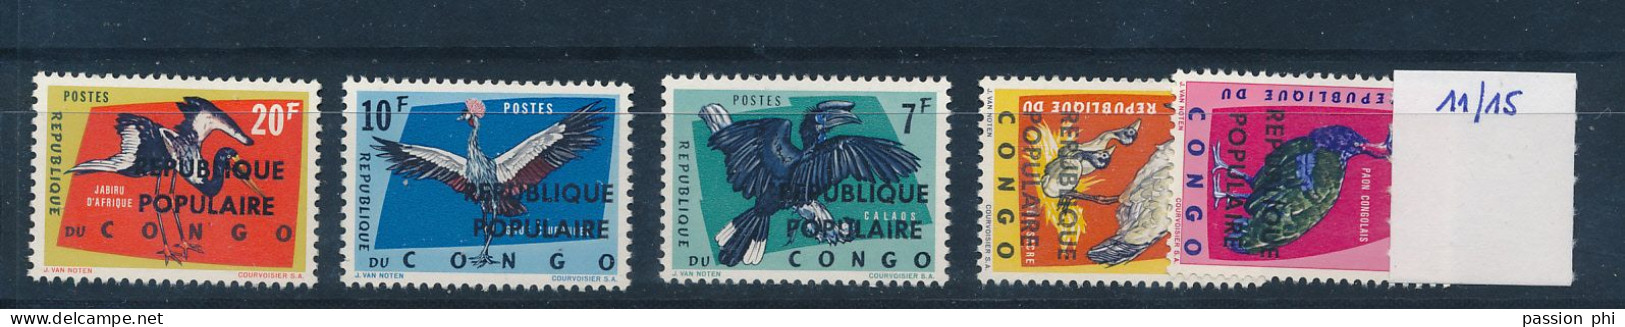 KATANGA CONGO KINSHASA LOCAL OVERPRINT OF STANLEYVILLE BIRDS COB 11/15 MNH POSTFRIS SANS CHARNIERE - Katanga